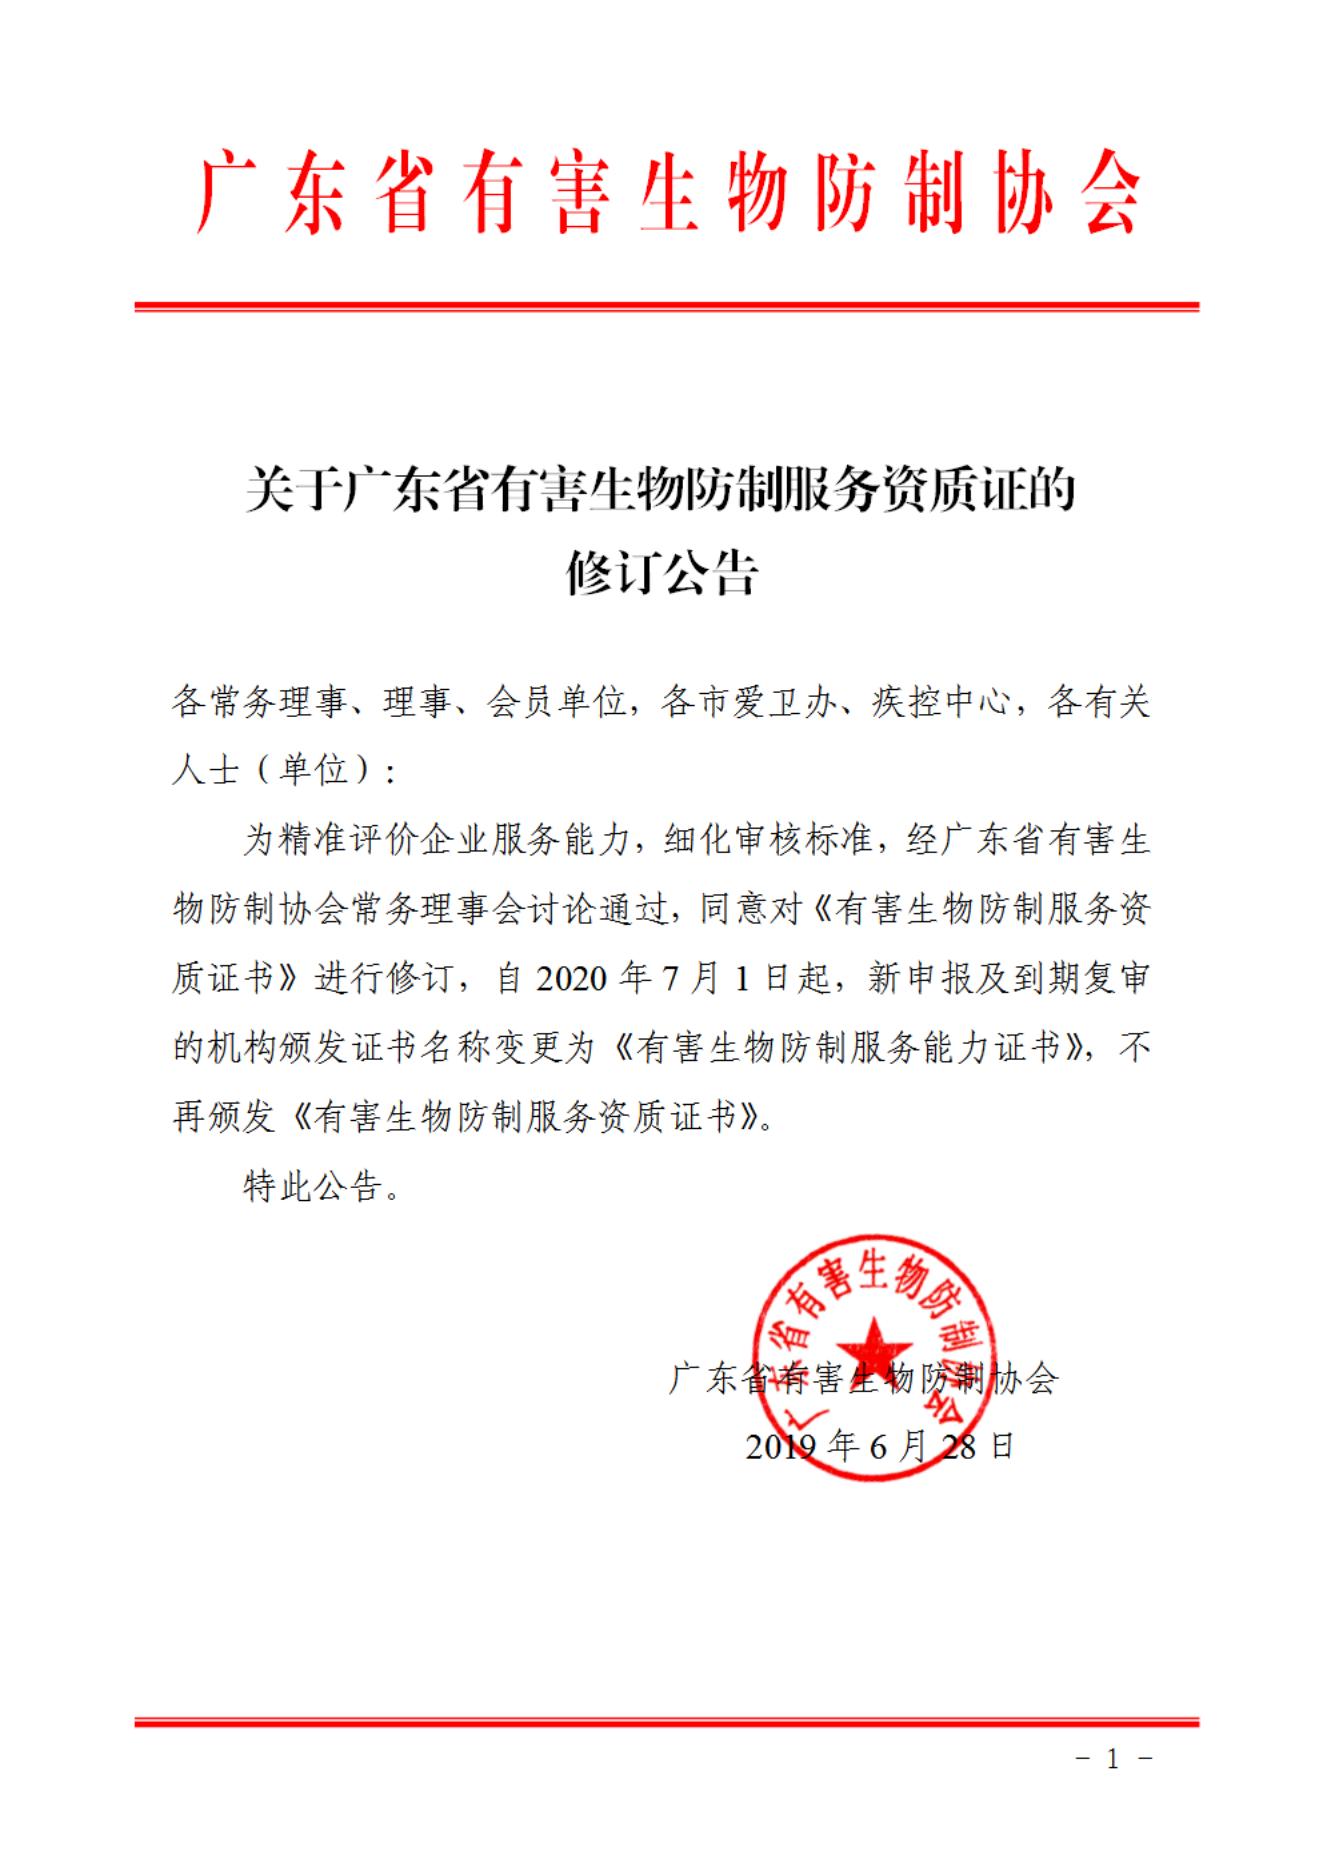 关于广东省有害生物防制服务资质证的修订公告_00.jpg